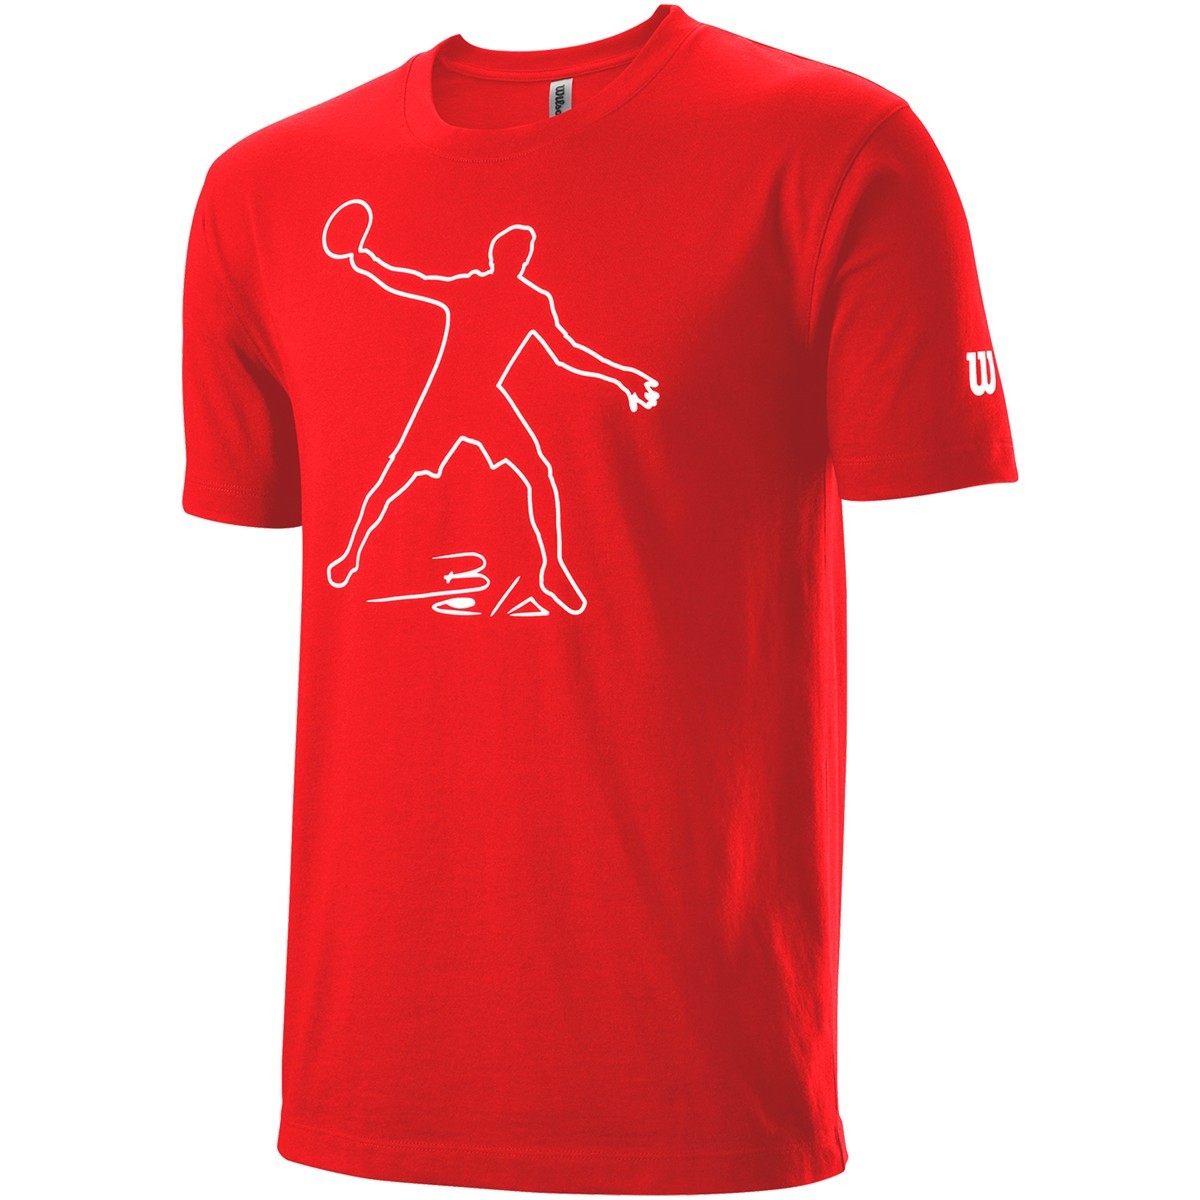 Wilson Bela Tech T-shirt - Red